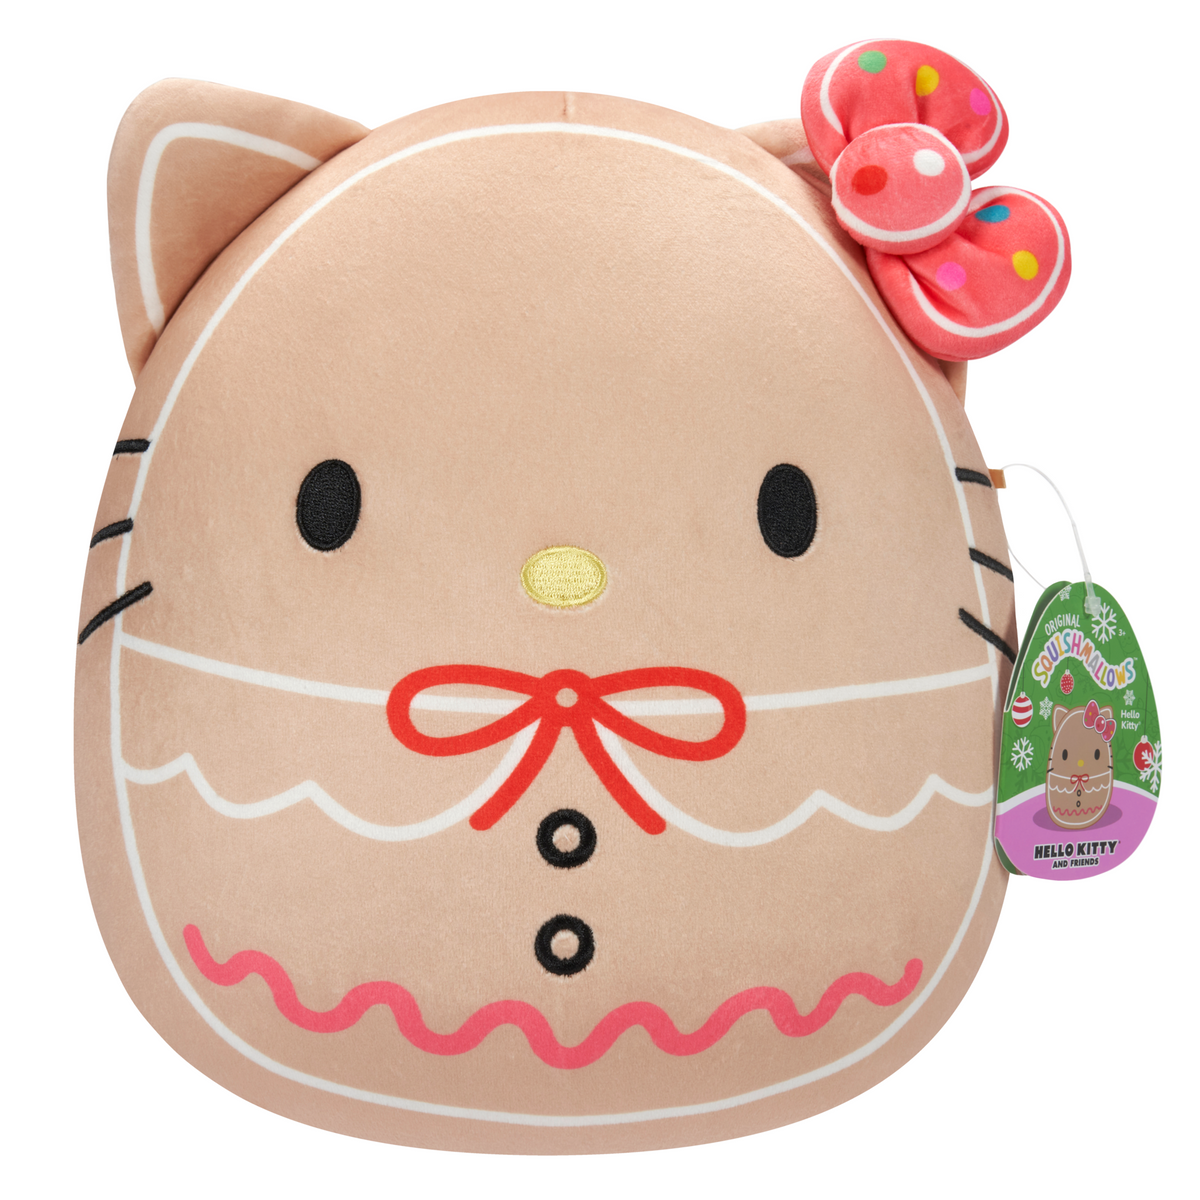 Hello Kitty - 10" SANRIO Hello Kitty Christmas Squishmallow